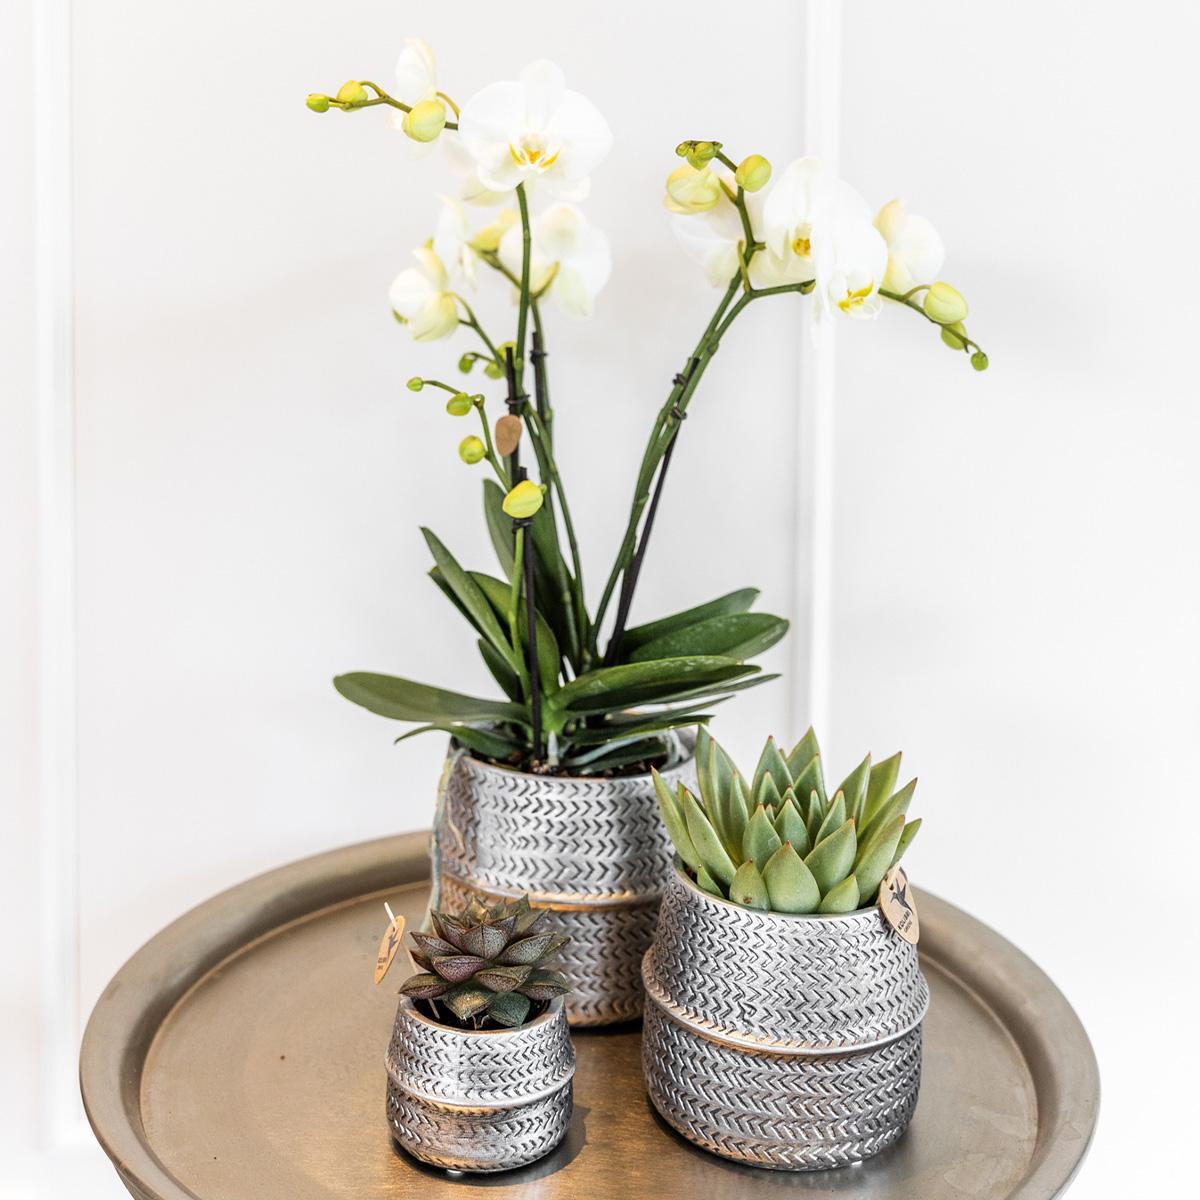 Zilveren plantenset Groove met een witte Phalaenopsis orchidee Amabilis van 9 cm en een groene Succulent Crassula Ovata van 6 cm. Inclusief zilveren keramieken sierpotten.